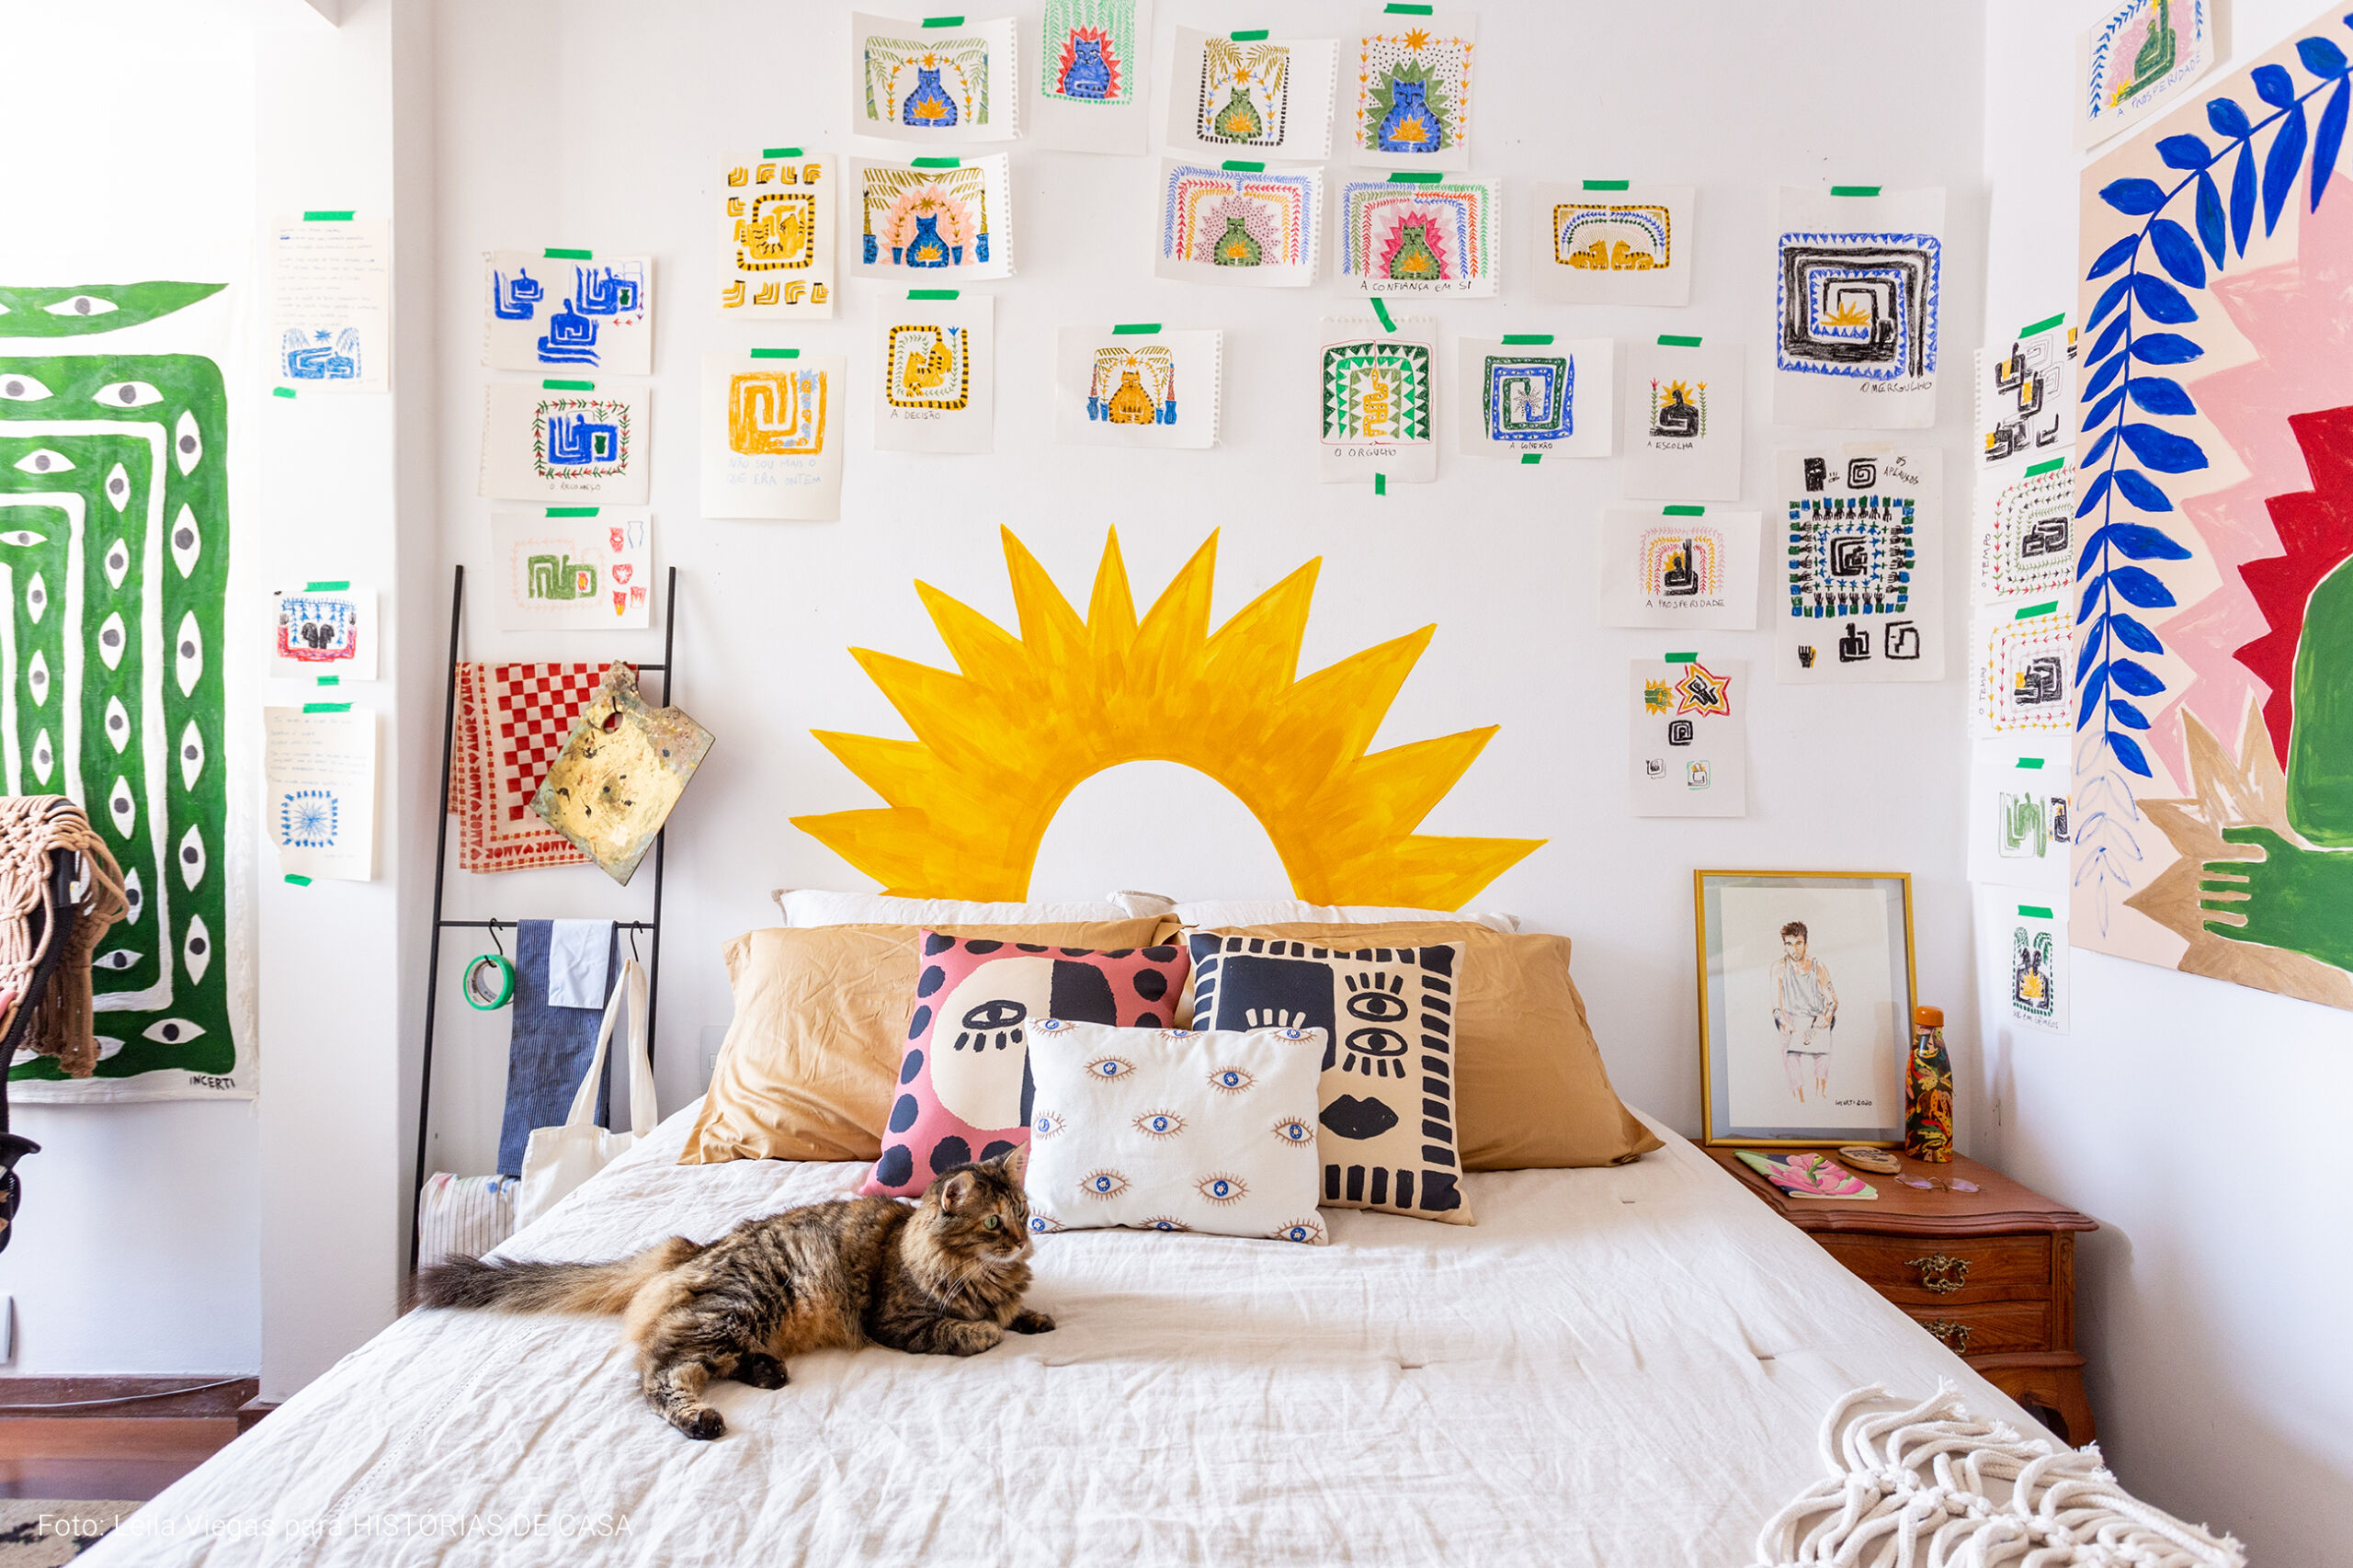 Apartamento do artista João Incerti, com decoração colorida e paredes repletas de pinturas e arte.